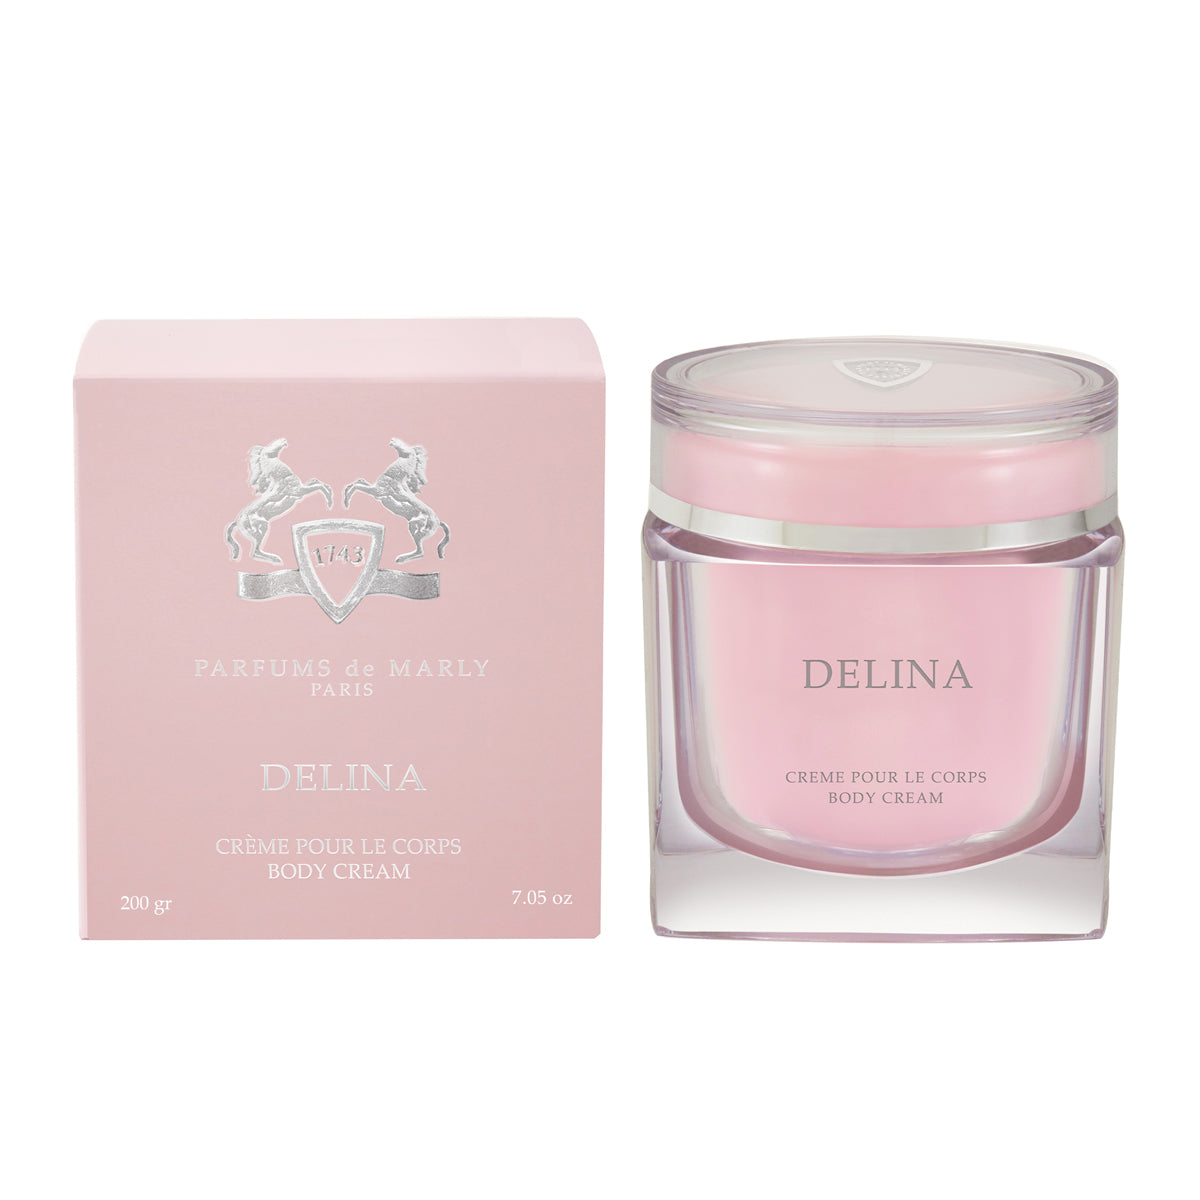 Delina – Parfums de Marly – Crema corporal 200 gr